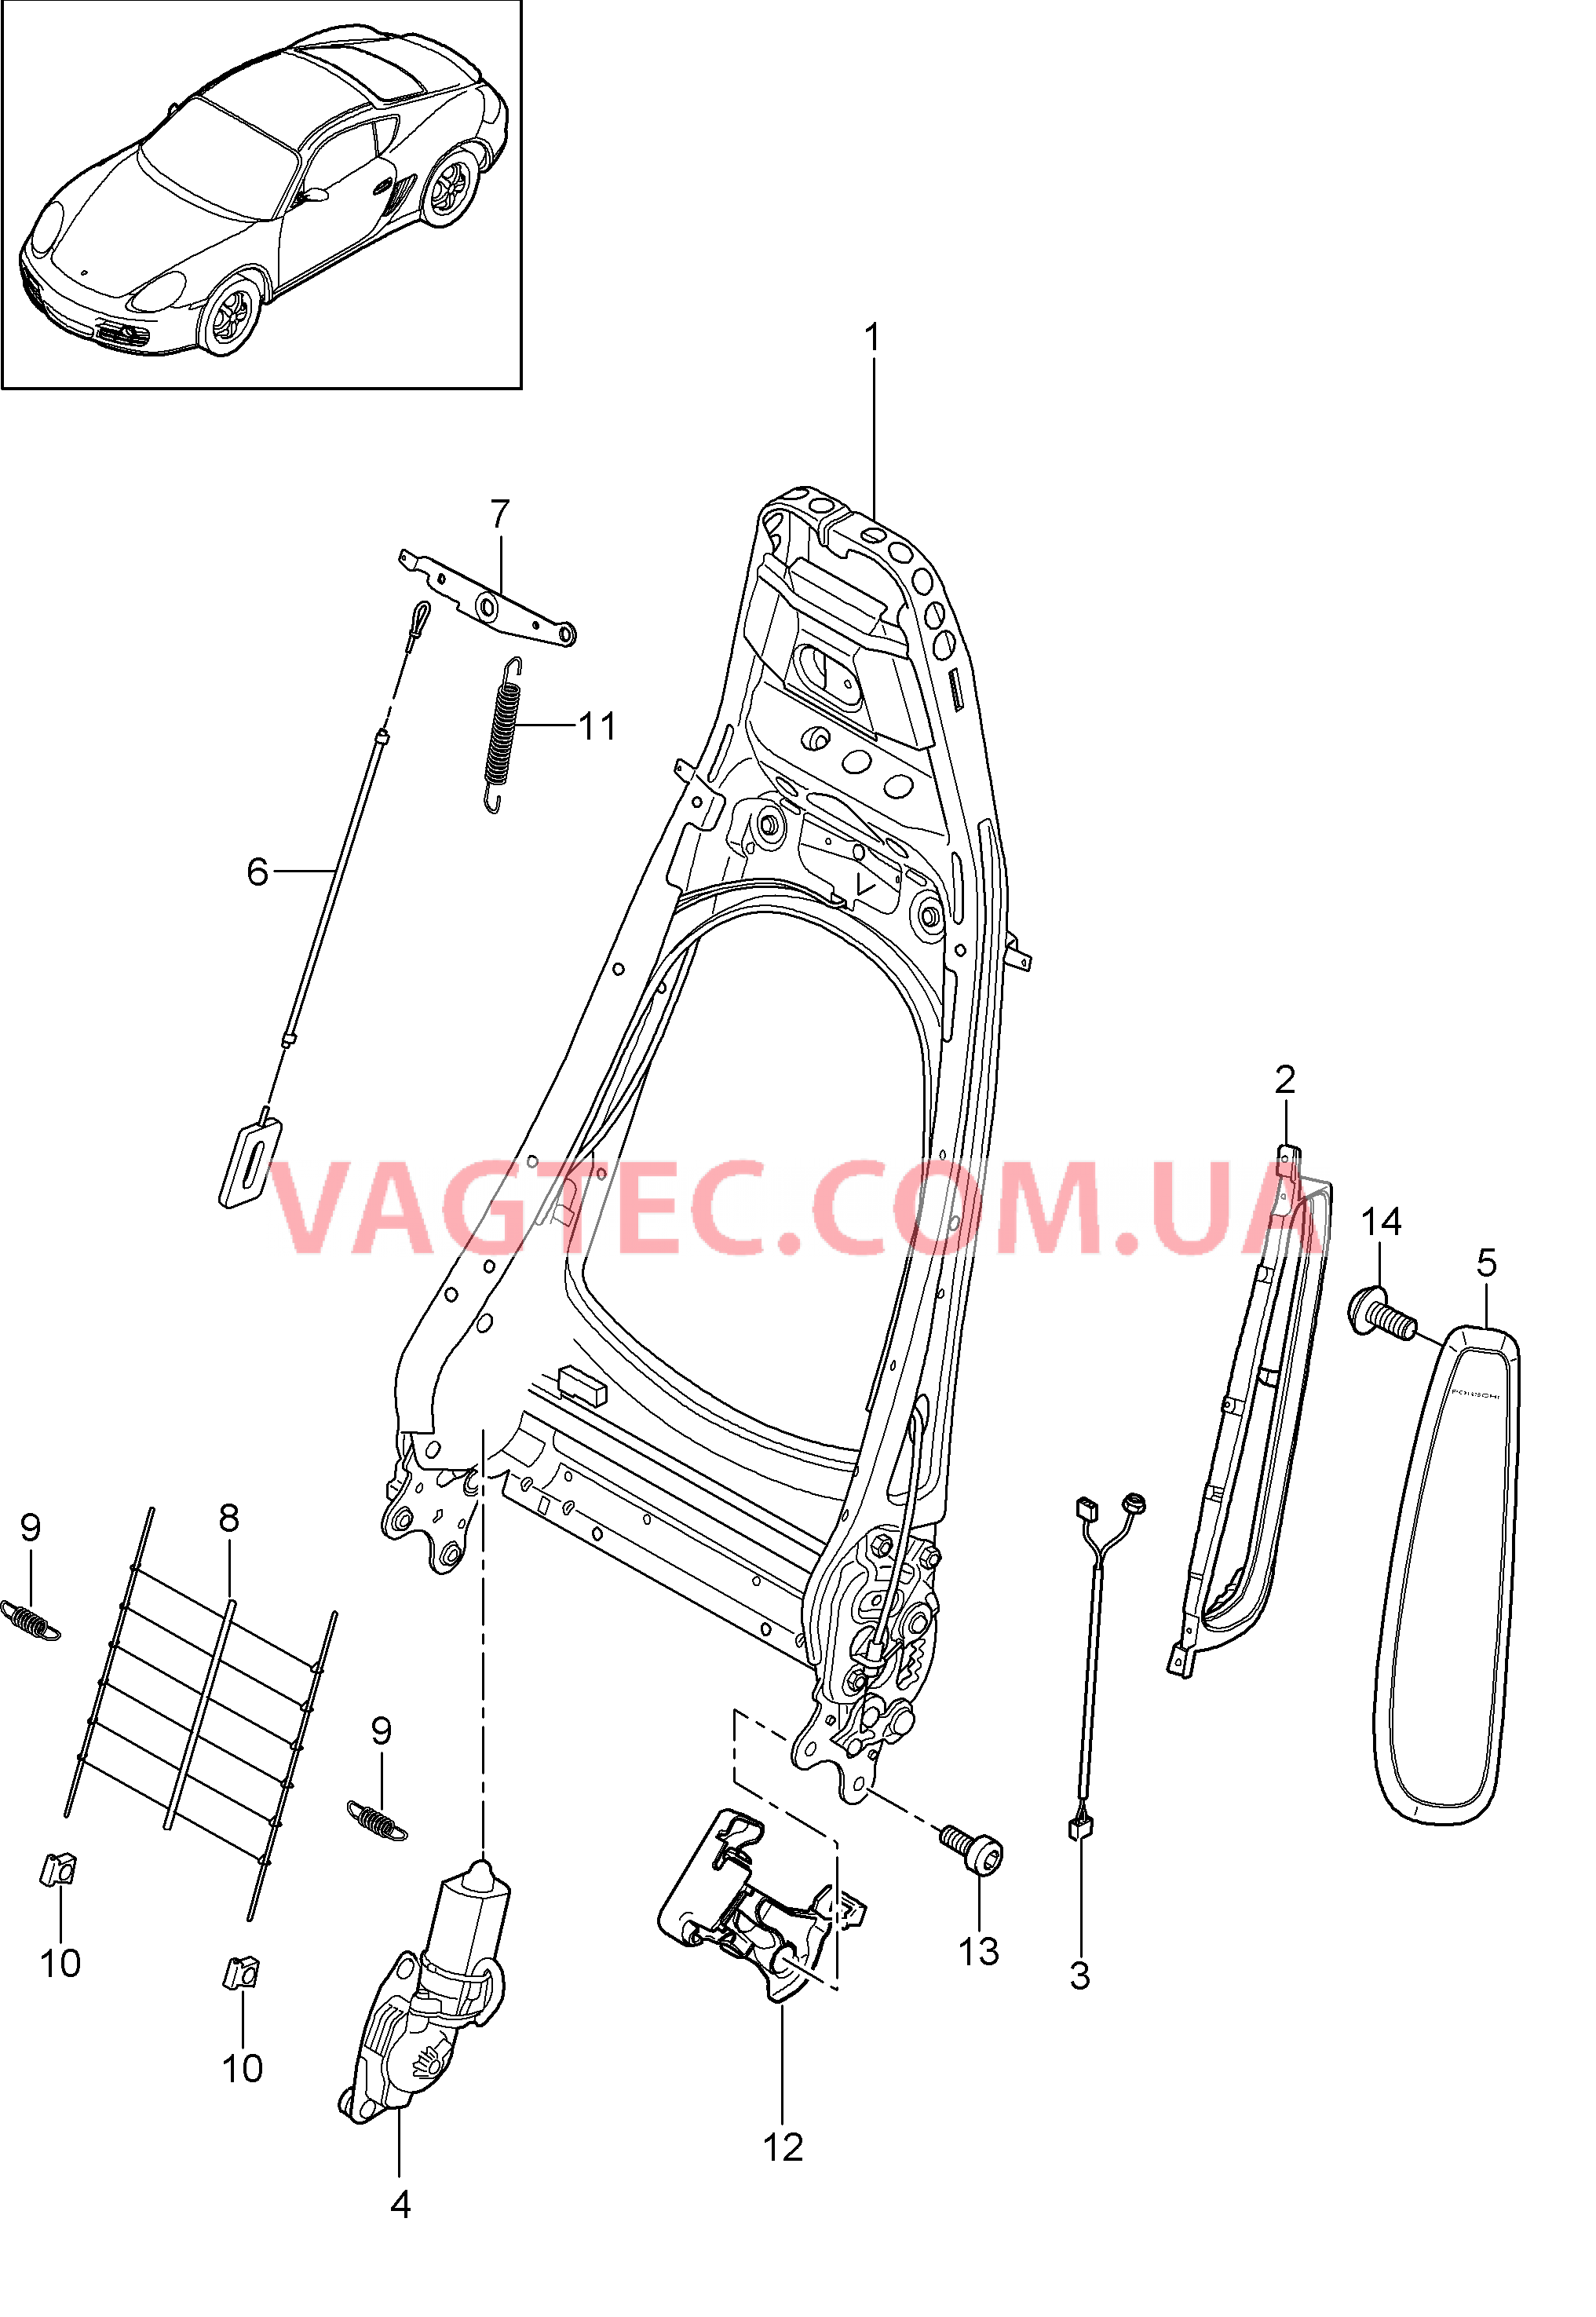 817-006 Каркас спинки, Серийное сиденье, Сиденье KOMFORT
						
						I369/370, I437/438 для PORSCHE Cayman 2009-2012USA